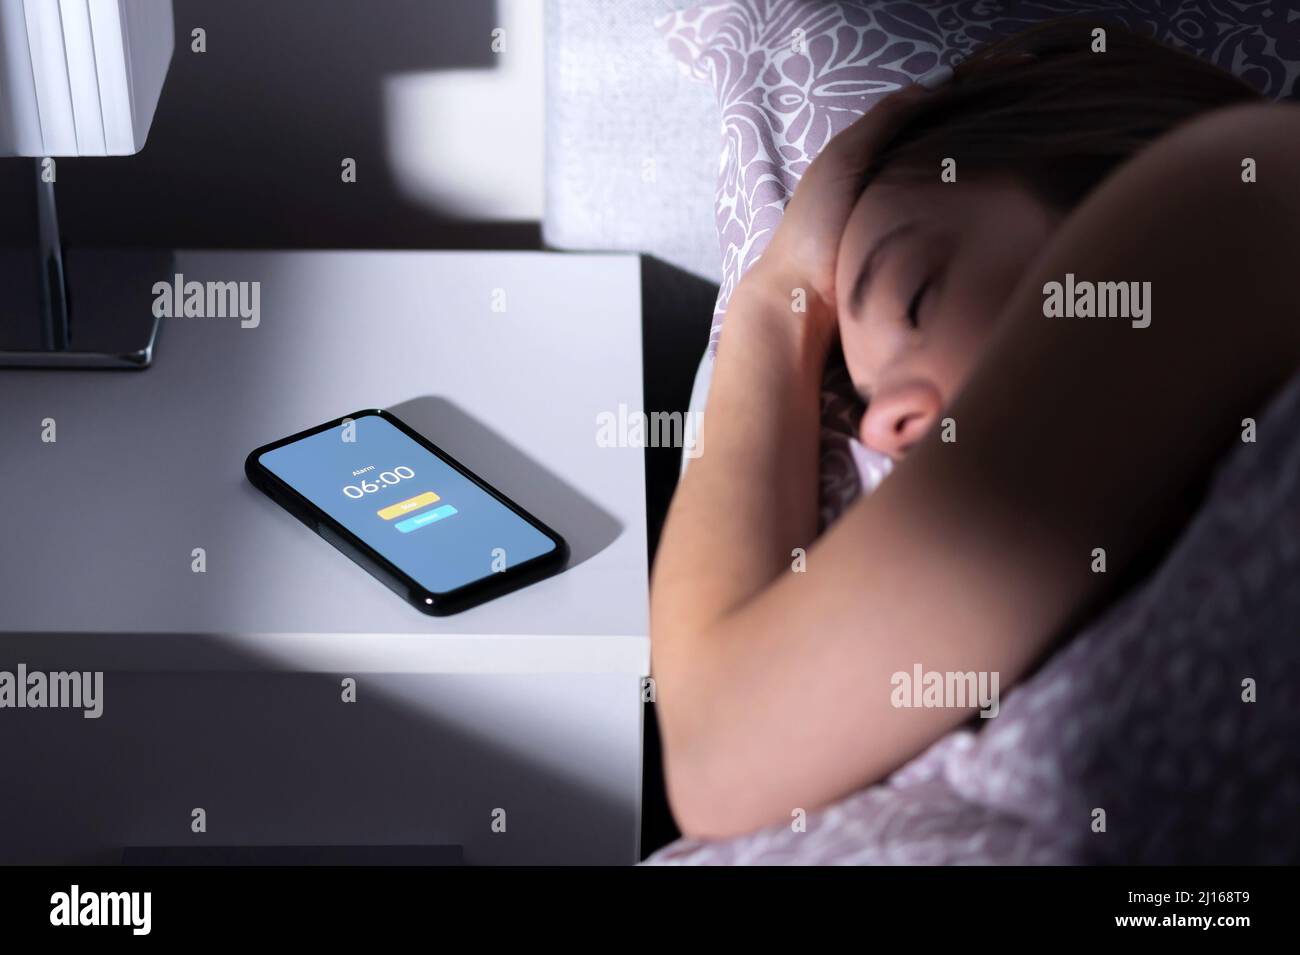 Alarma telefónica despertando a una mujer cansada durmiendo en la cama por la noche o por la mañana. Teléfono móvil en la mesa con temporizador de reloj y botón SNOOZE. Persona que duerme sobre la cama. Foto de stock